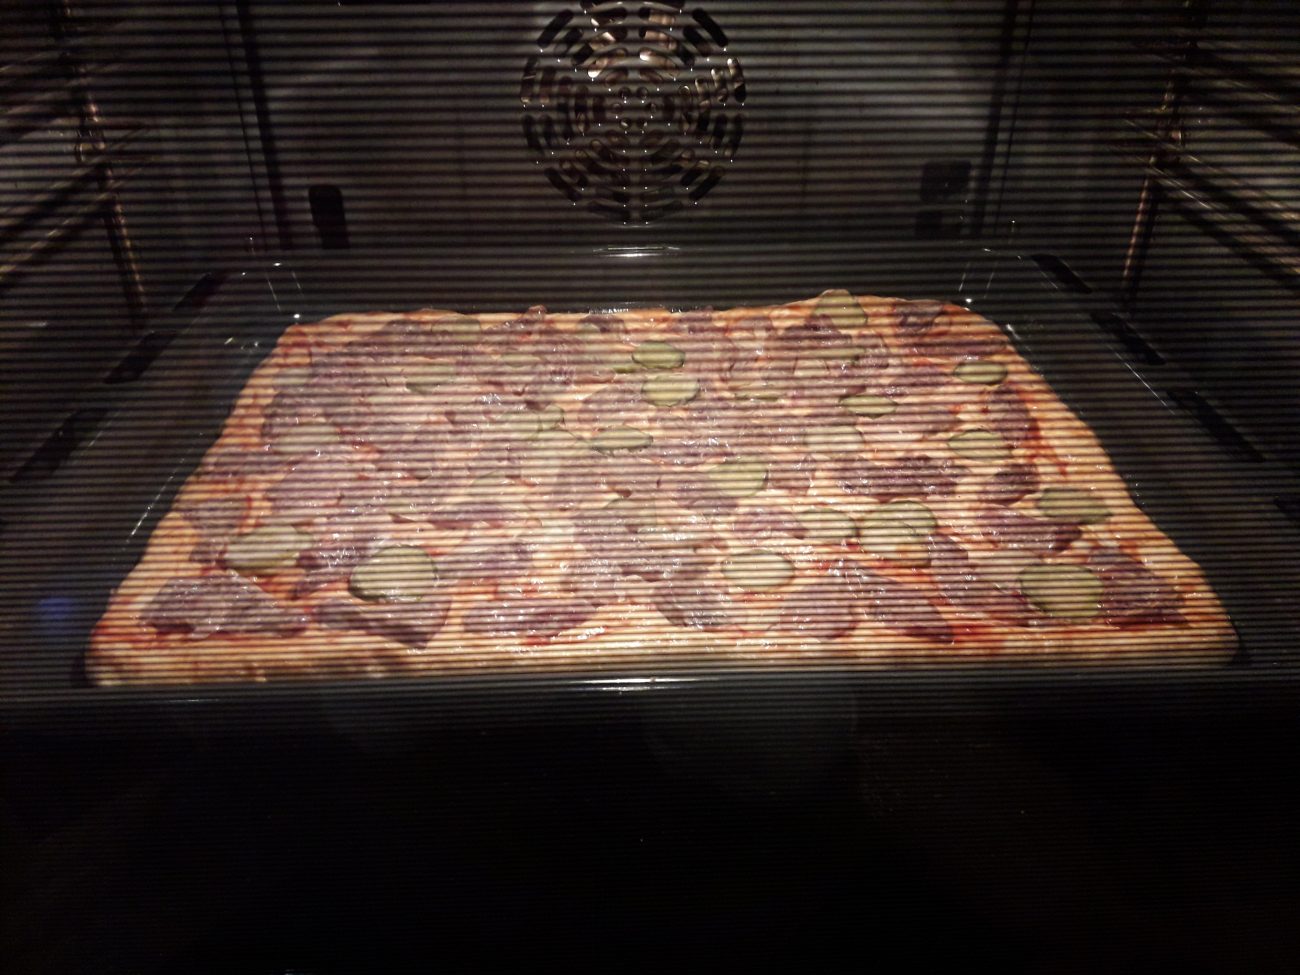 большая пицца в духовке на протвине фото 60